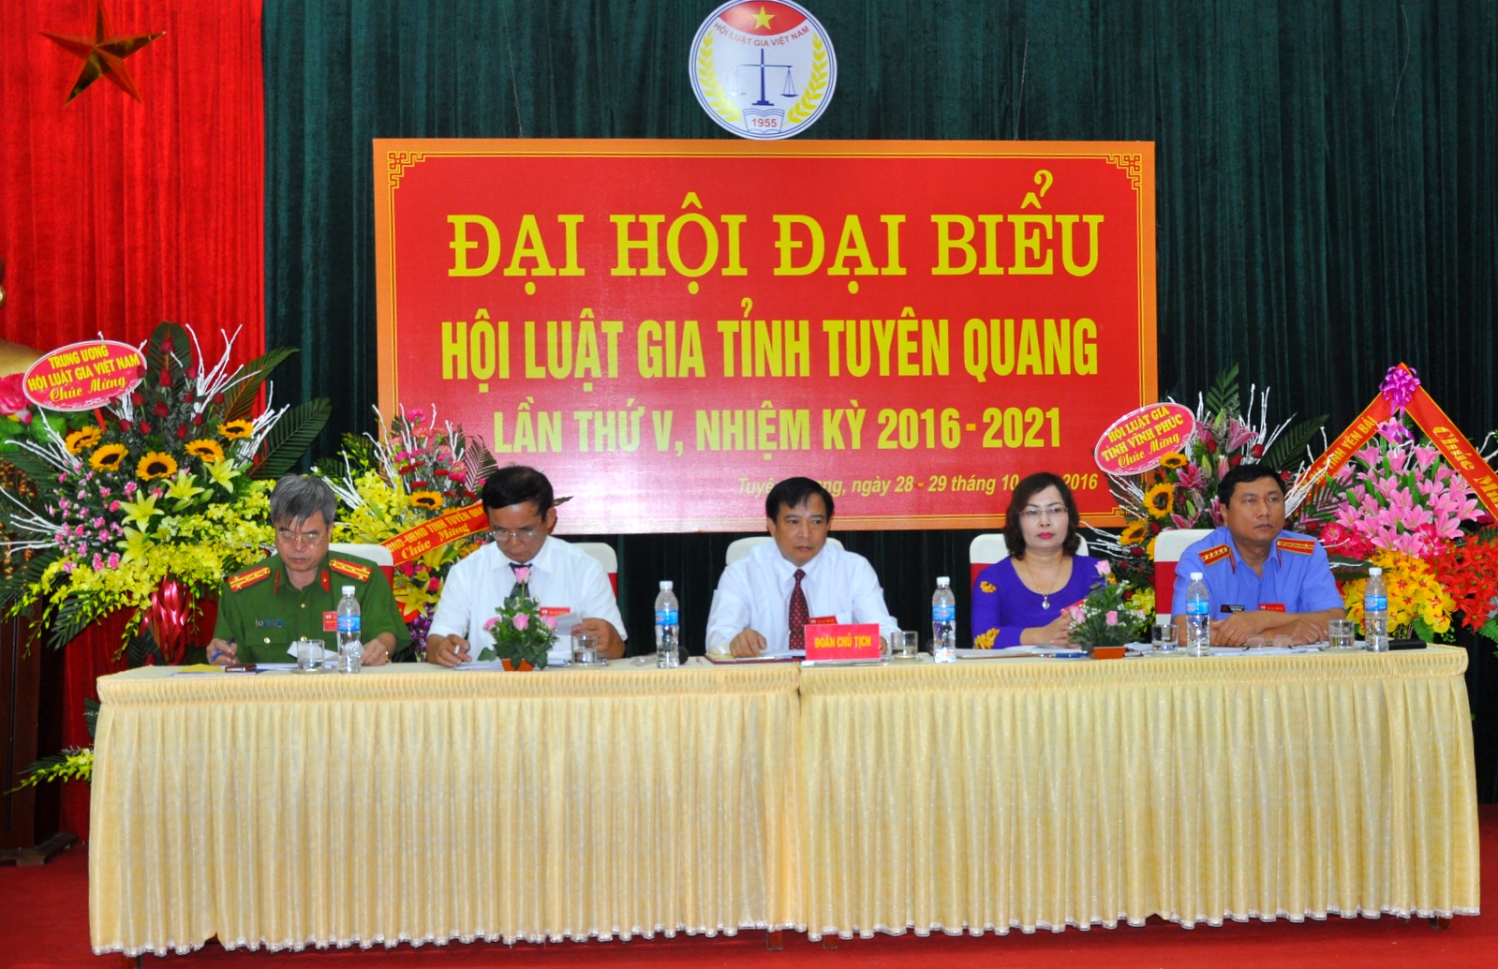 Đại hội Đại biểu Hội Luật gia tỉnh Tuyên Quang lần thứ V, nhiệm kỳ 2016-2021